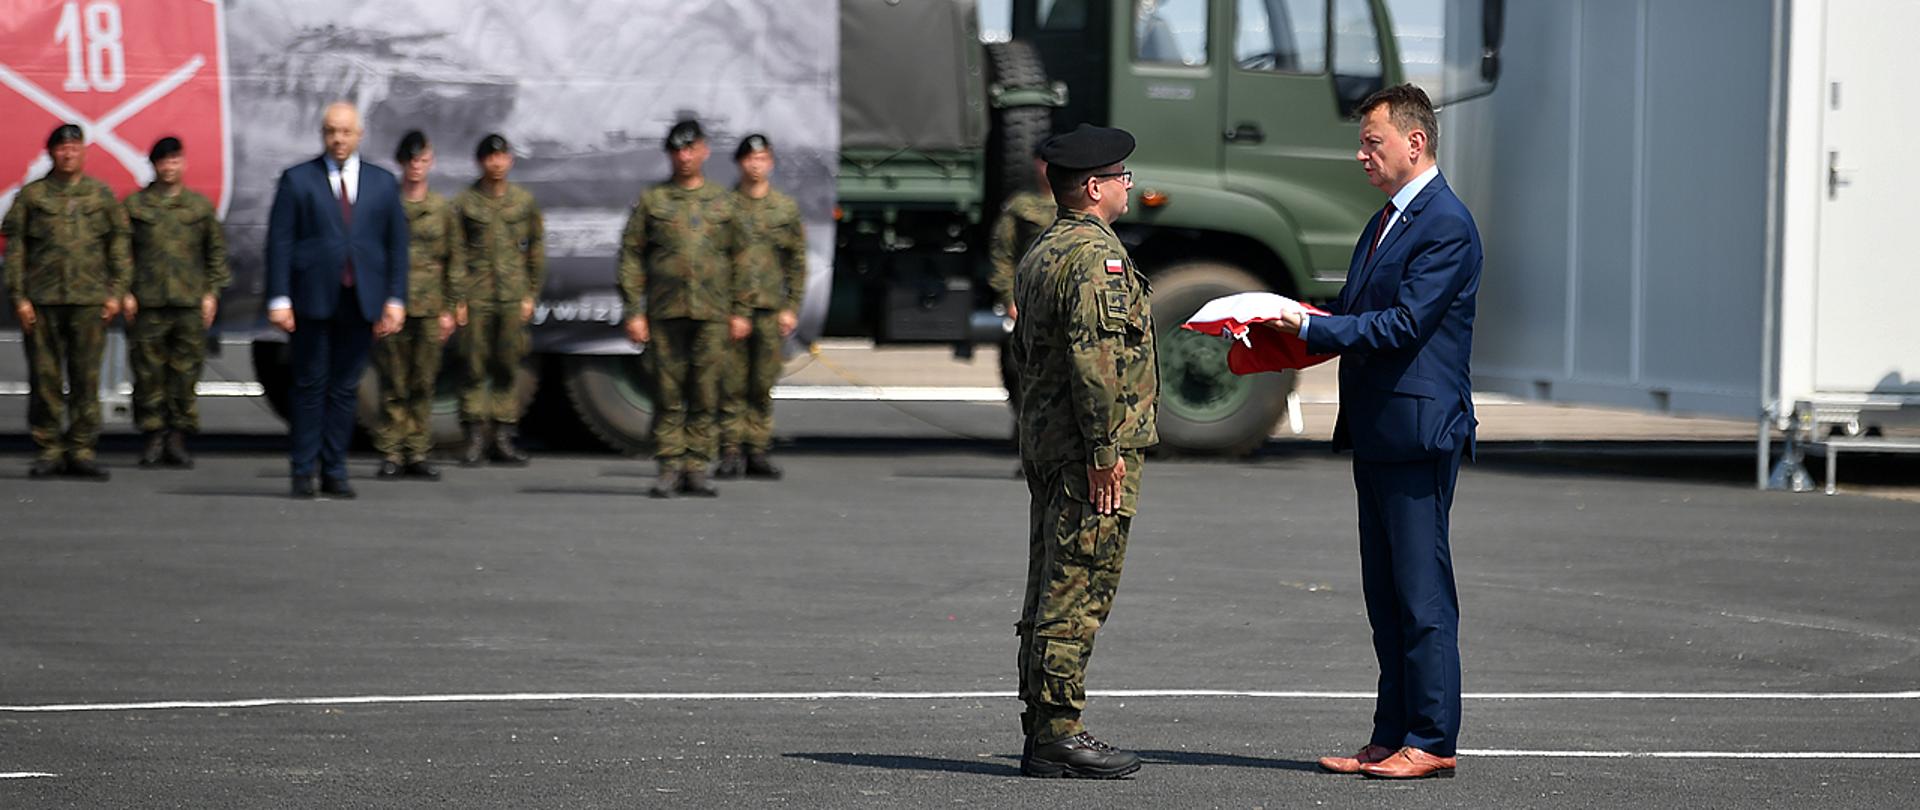 Minister Mariusz Błaszczak wręczył flagę dowódcy jednostki wojskowej, która powstaje w Białej Podlaskiej 